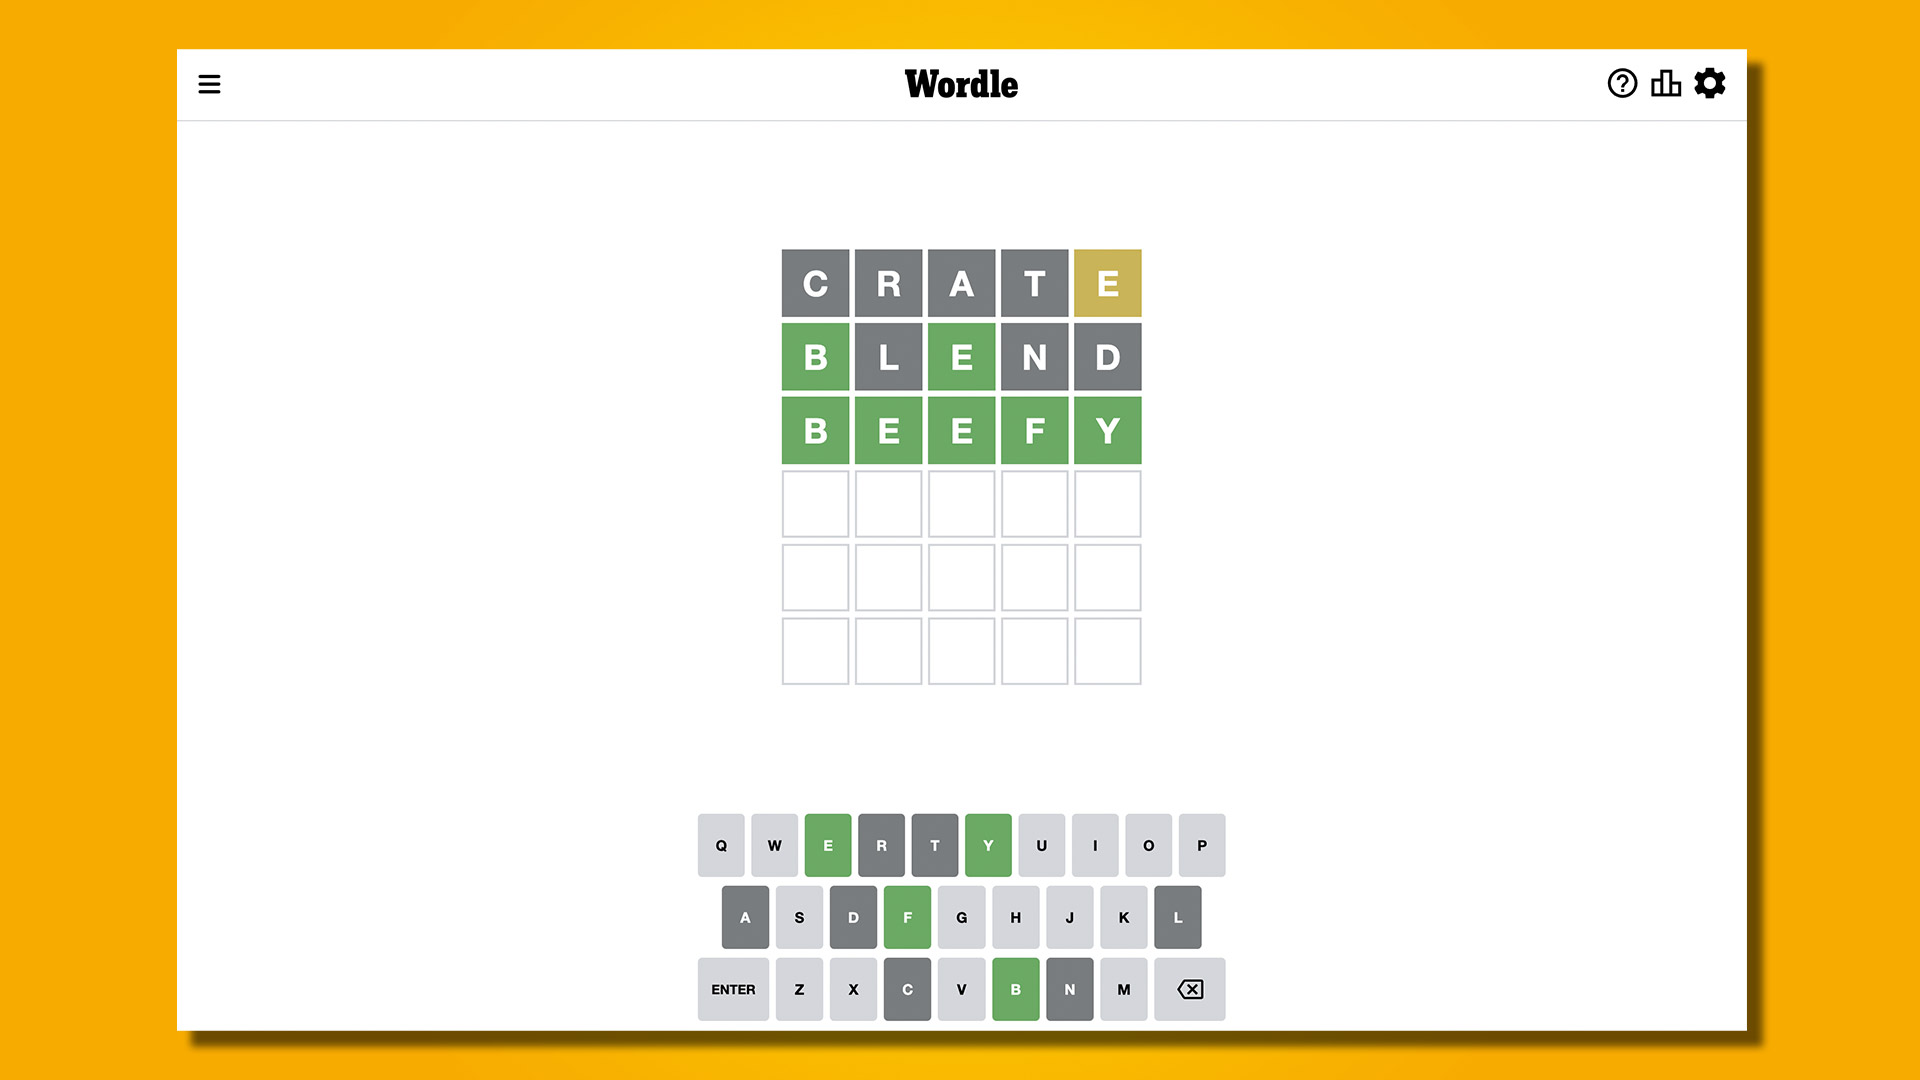 Réponse Wordle 586, 26 janvier 2023, sur fond jaune